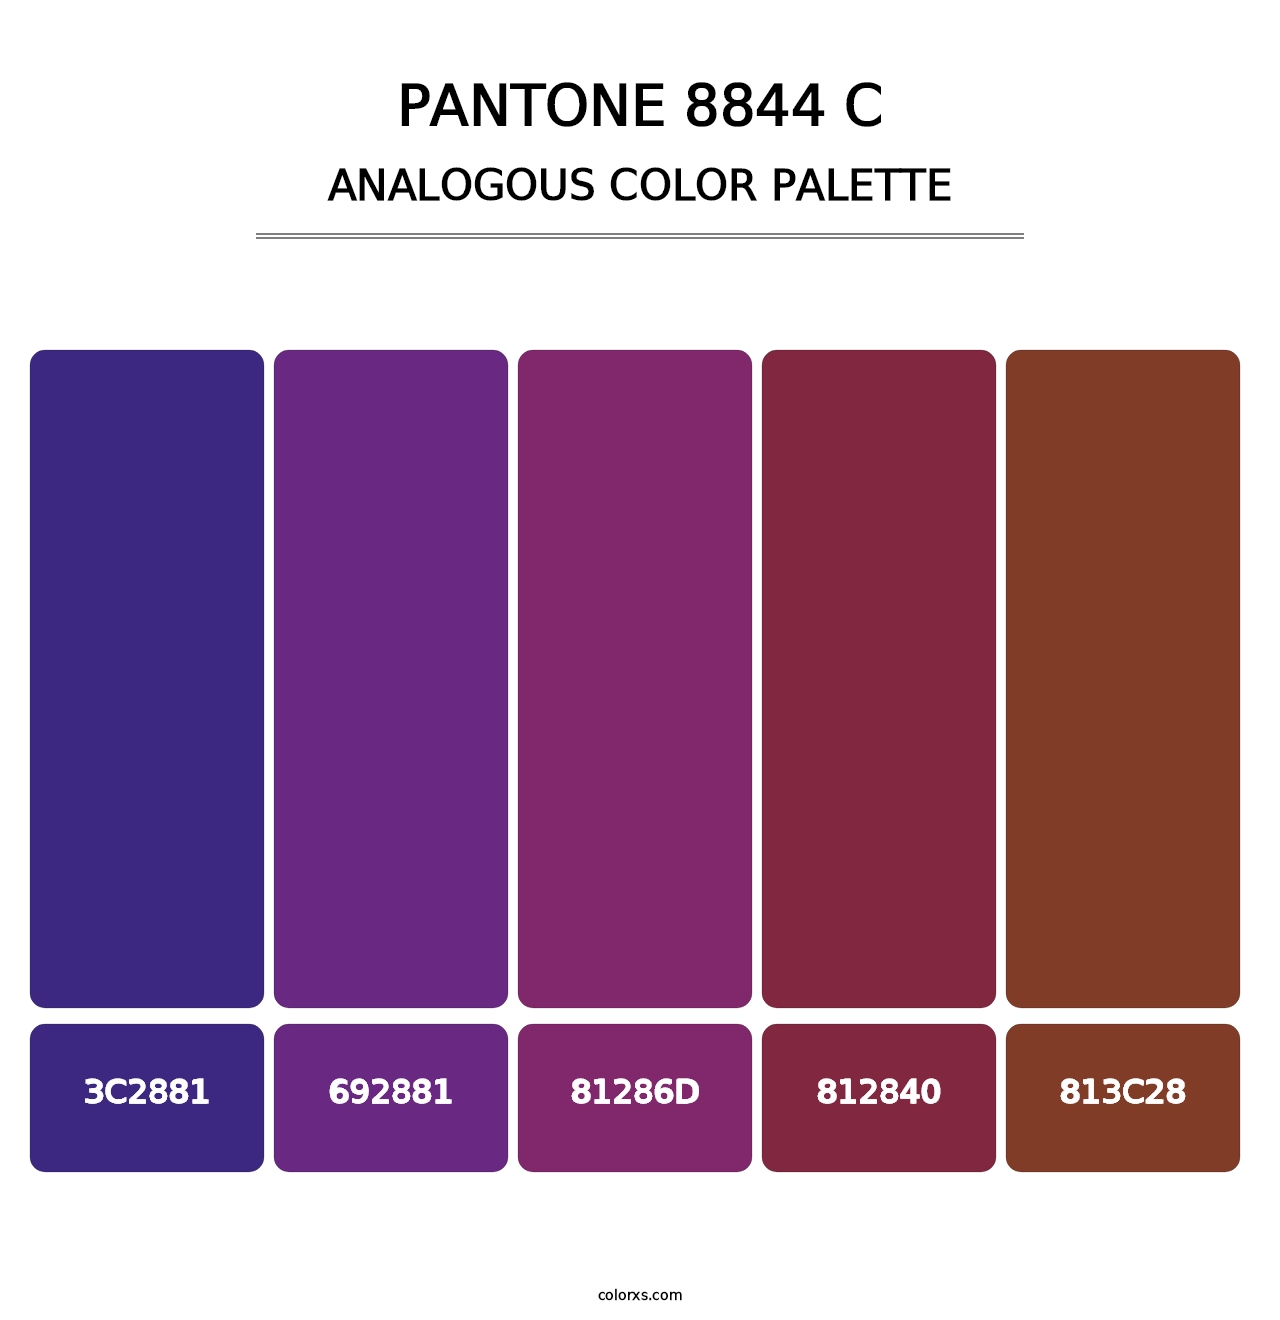 PANTONE 8844 C - Analogous Color Palette